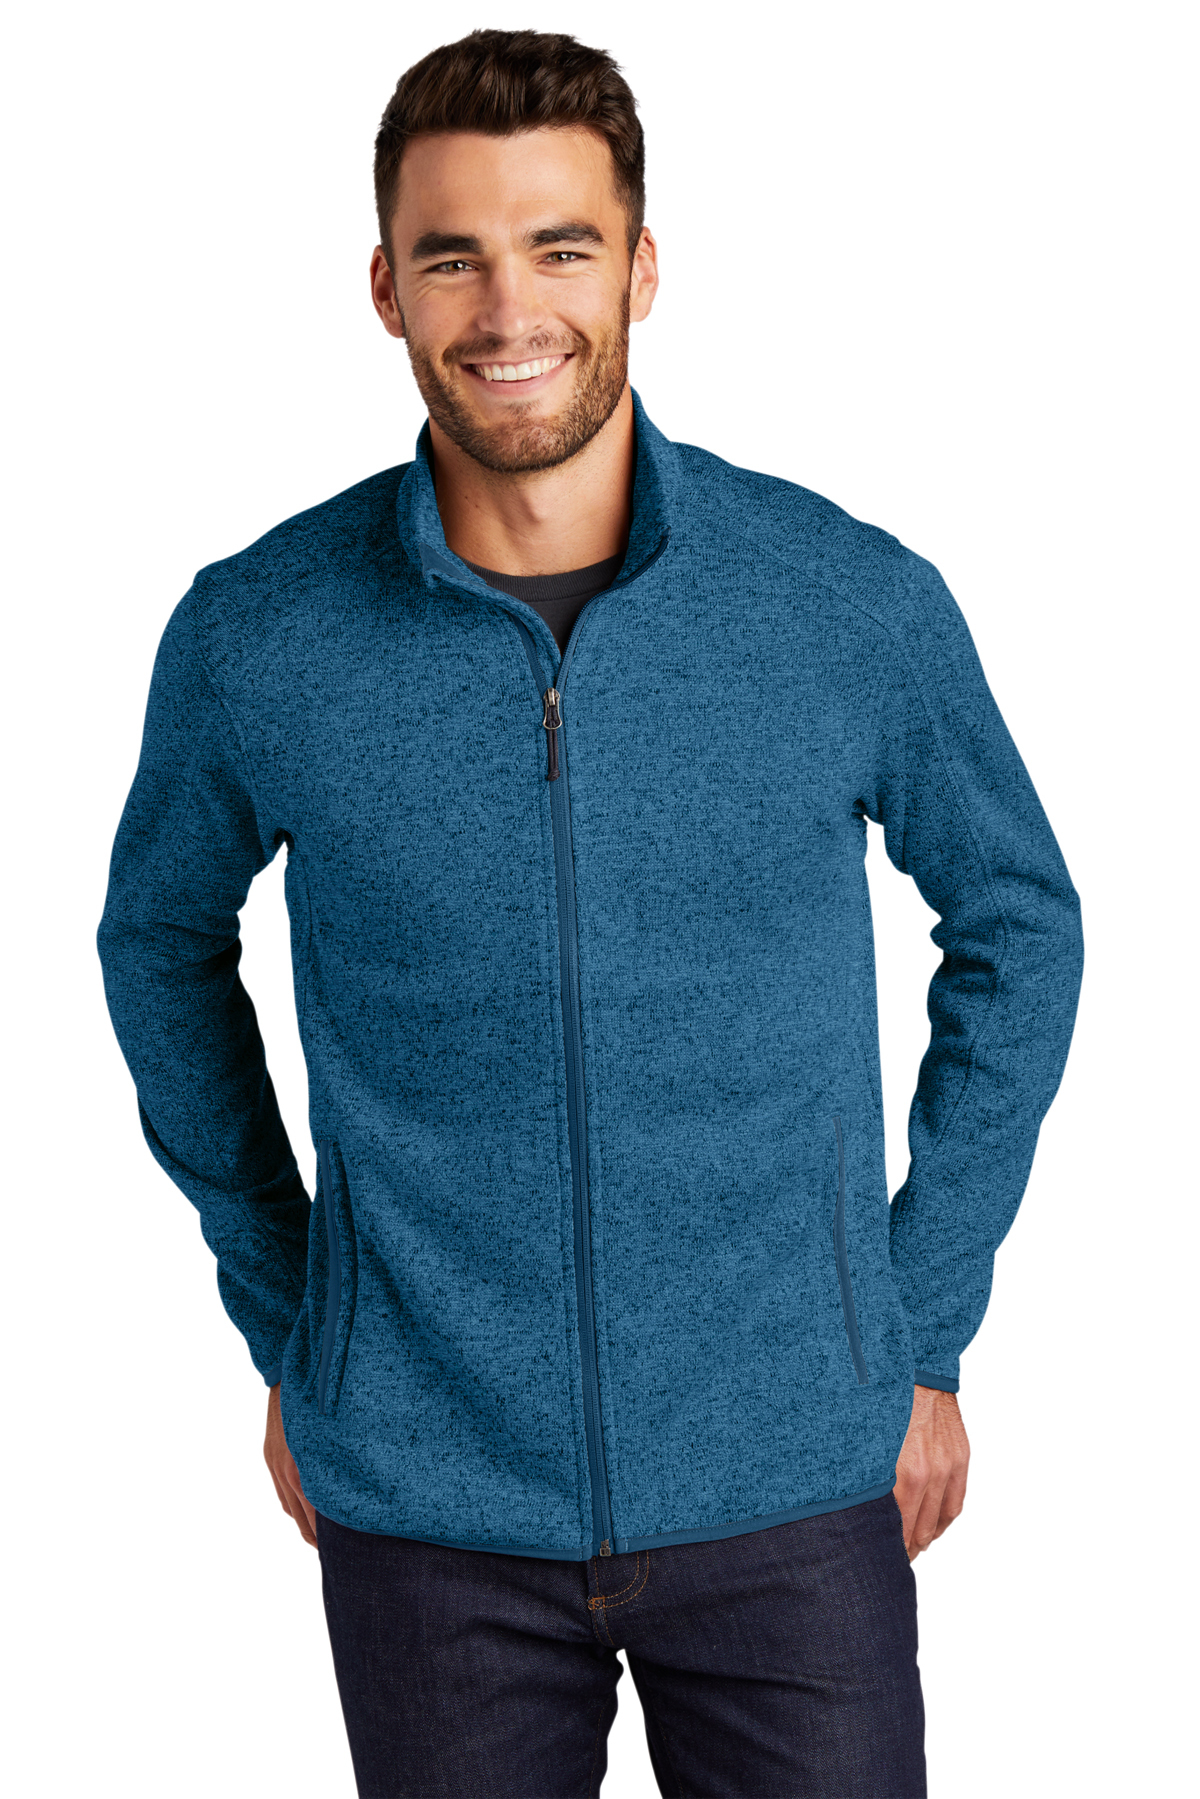 Port Authority Sweater Fleece Jacket, Product